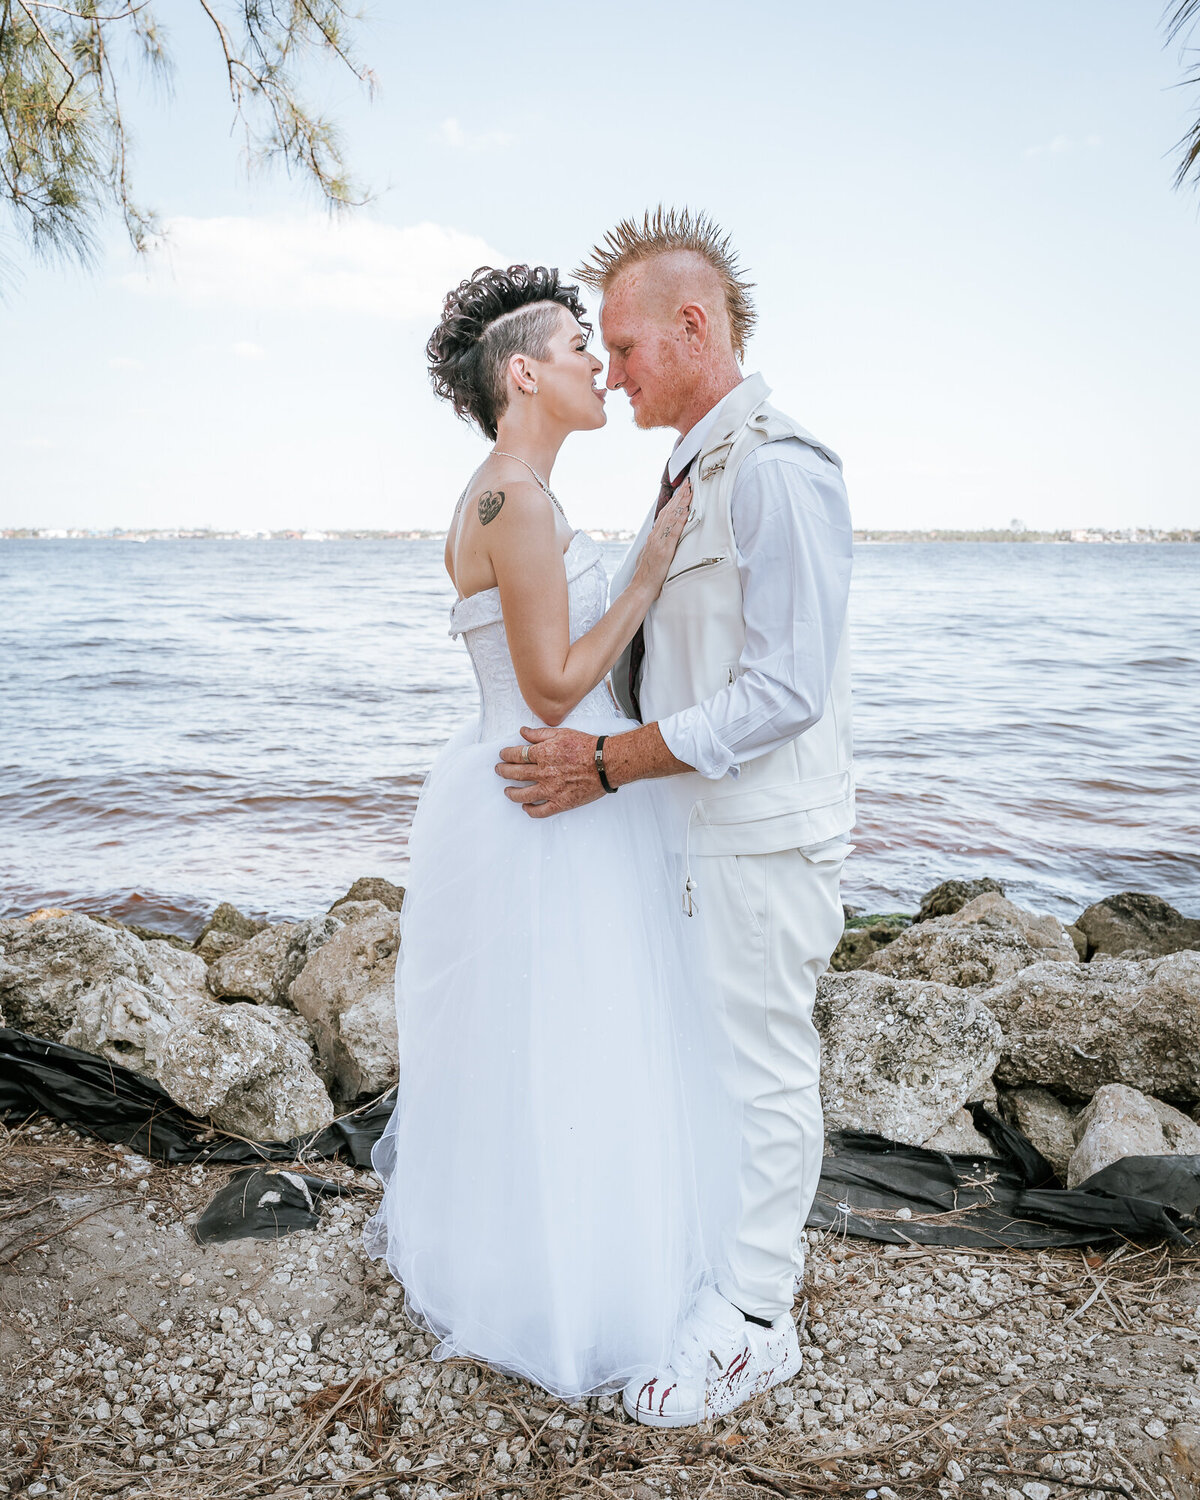 Southwest Florida wedding photographers - Fort Myers Wedding Photographer -11